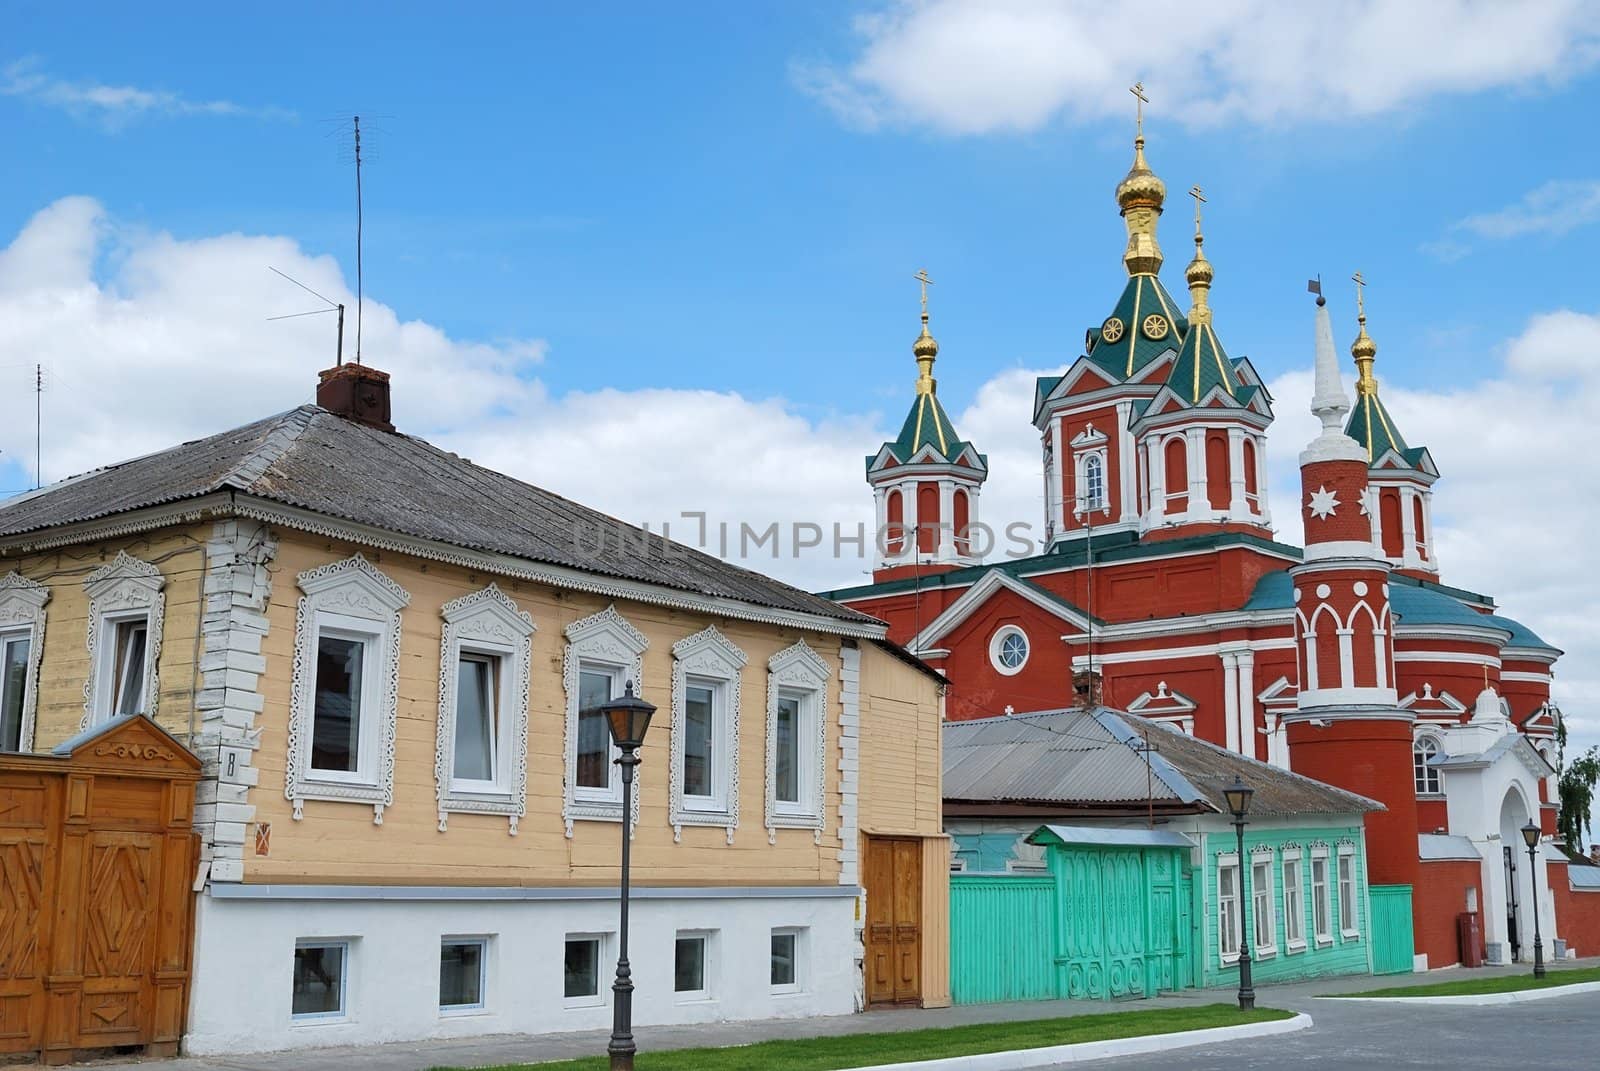 Street in Kremlin of old Russian town Kolomna near Moscow